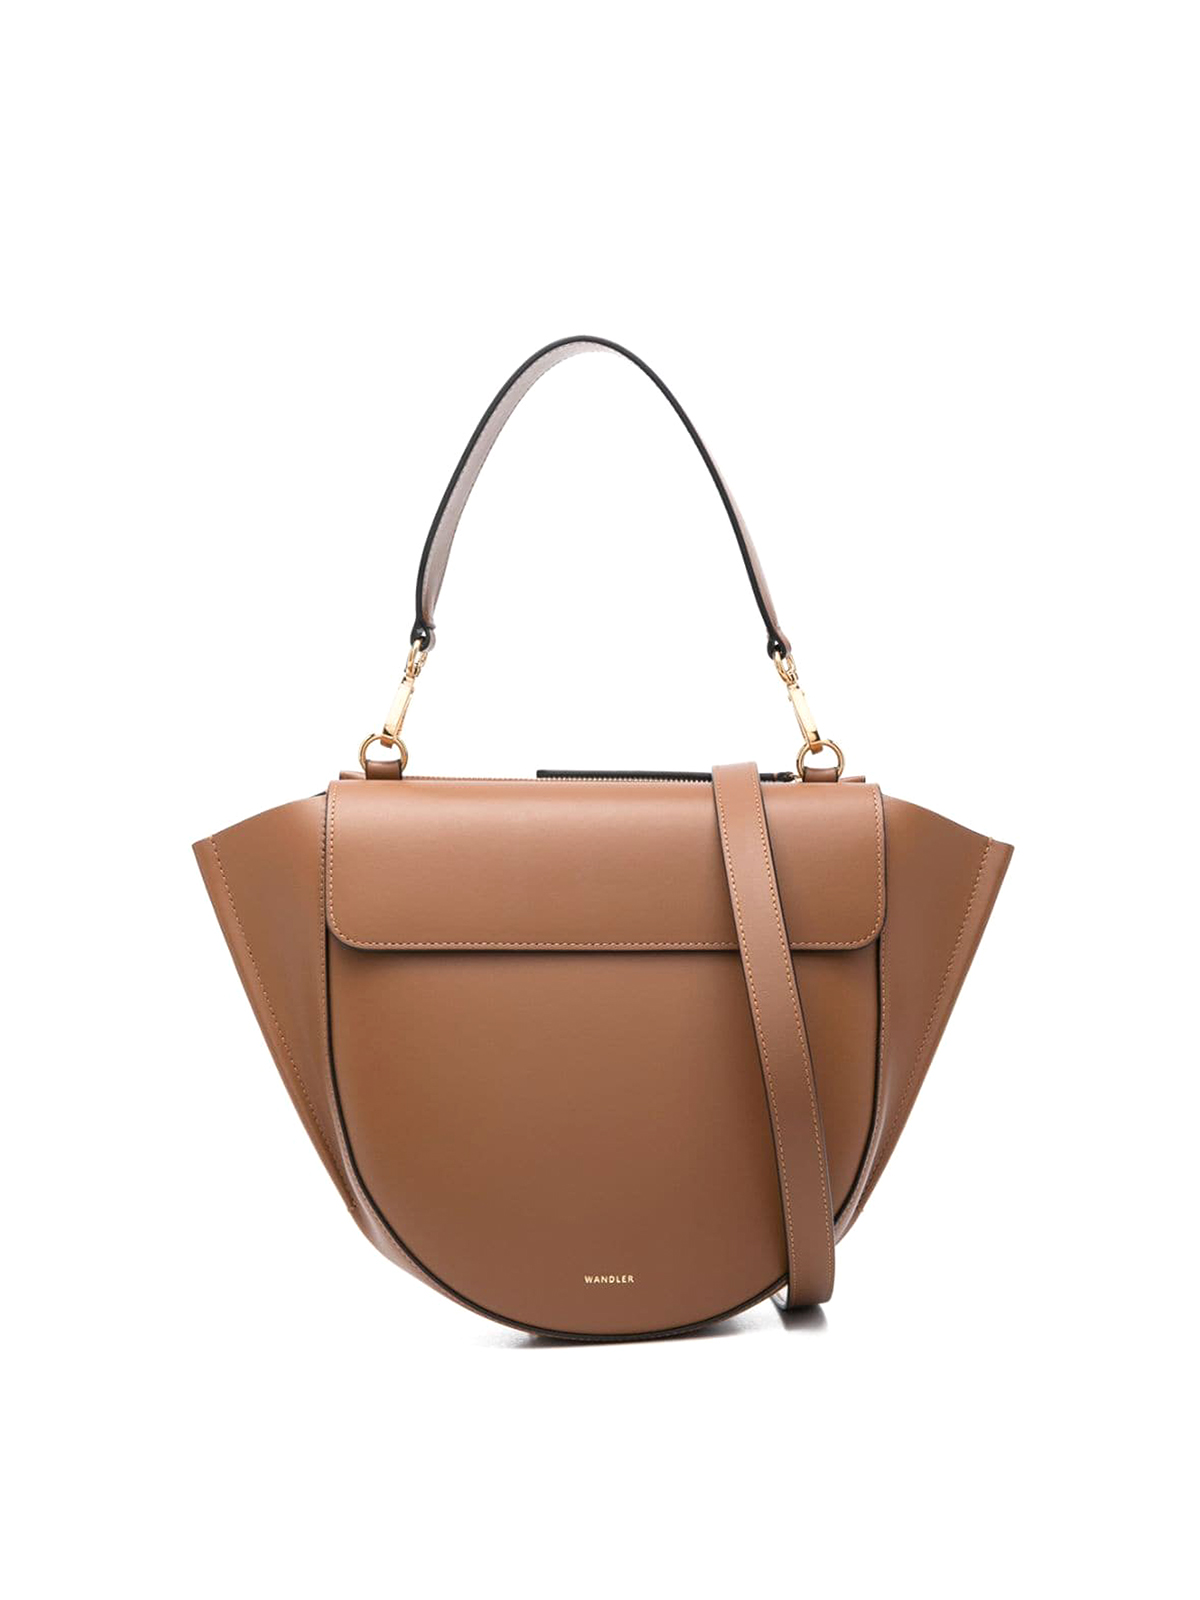 Wandler Hortensia Bag Medium In Brown